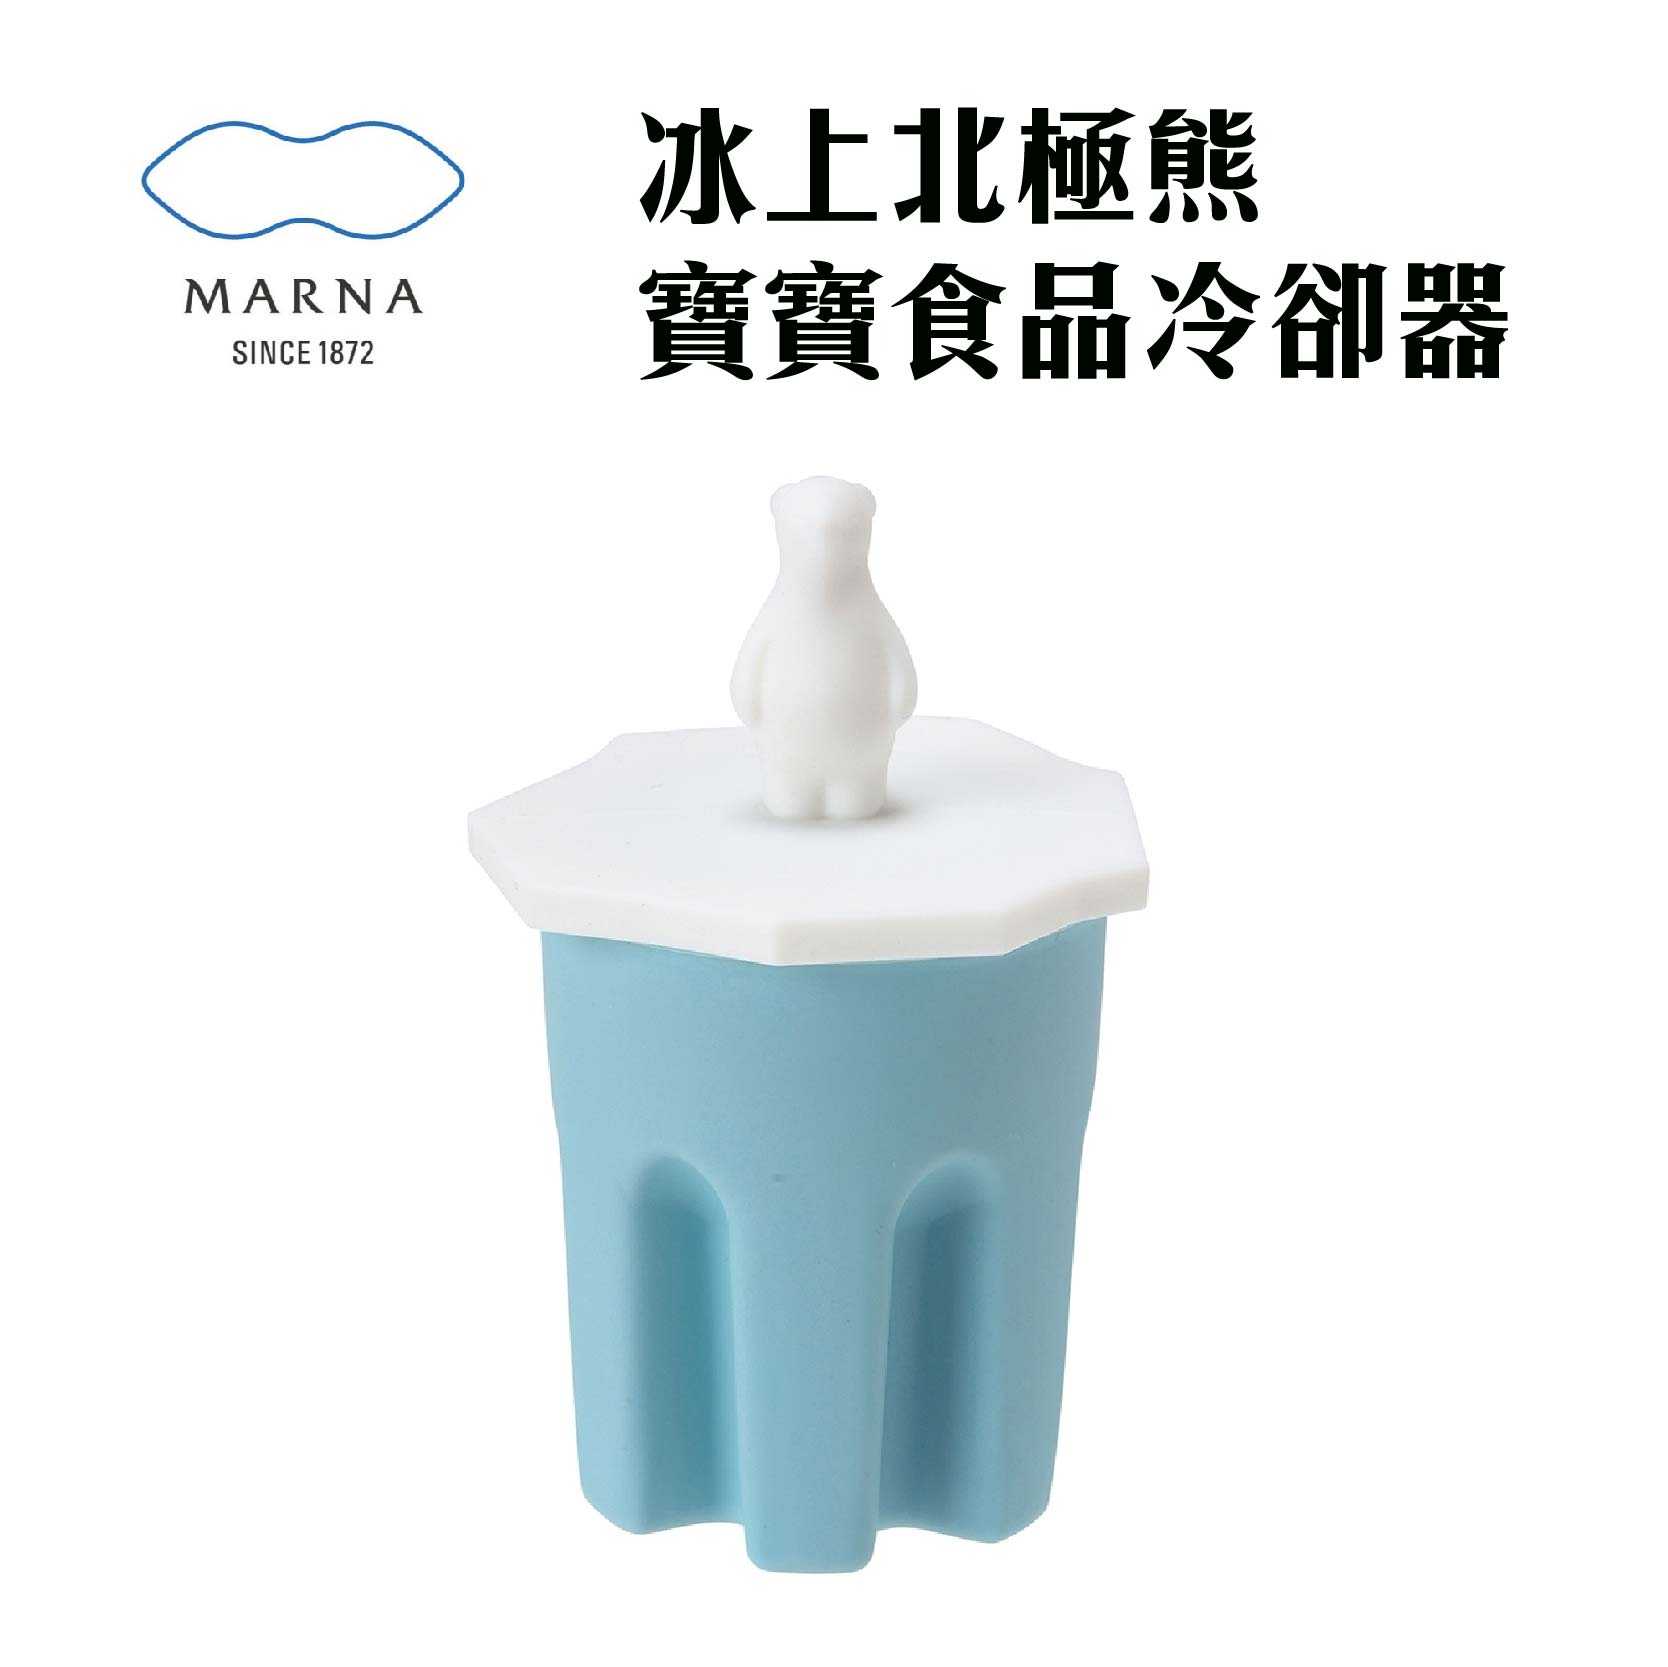 現貨 日本MARNA『冰上北極熊寶寶 食品冷卻器』冷卻棒 製冰器 嬰兒副食品 降溫器 降溫棒 嬰兒用品